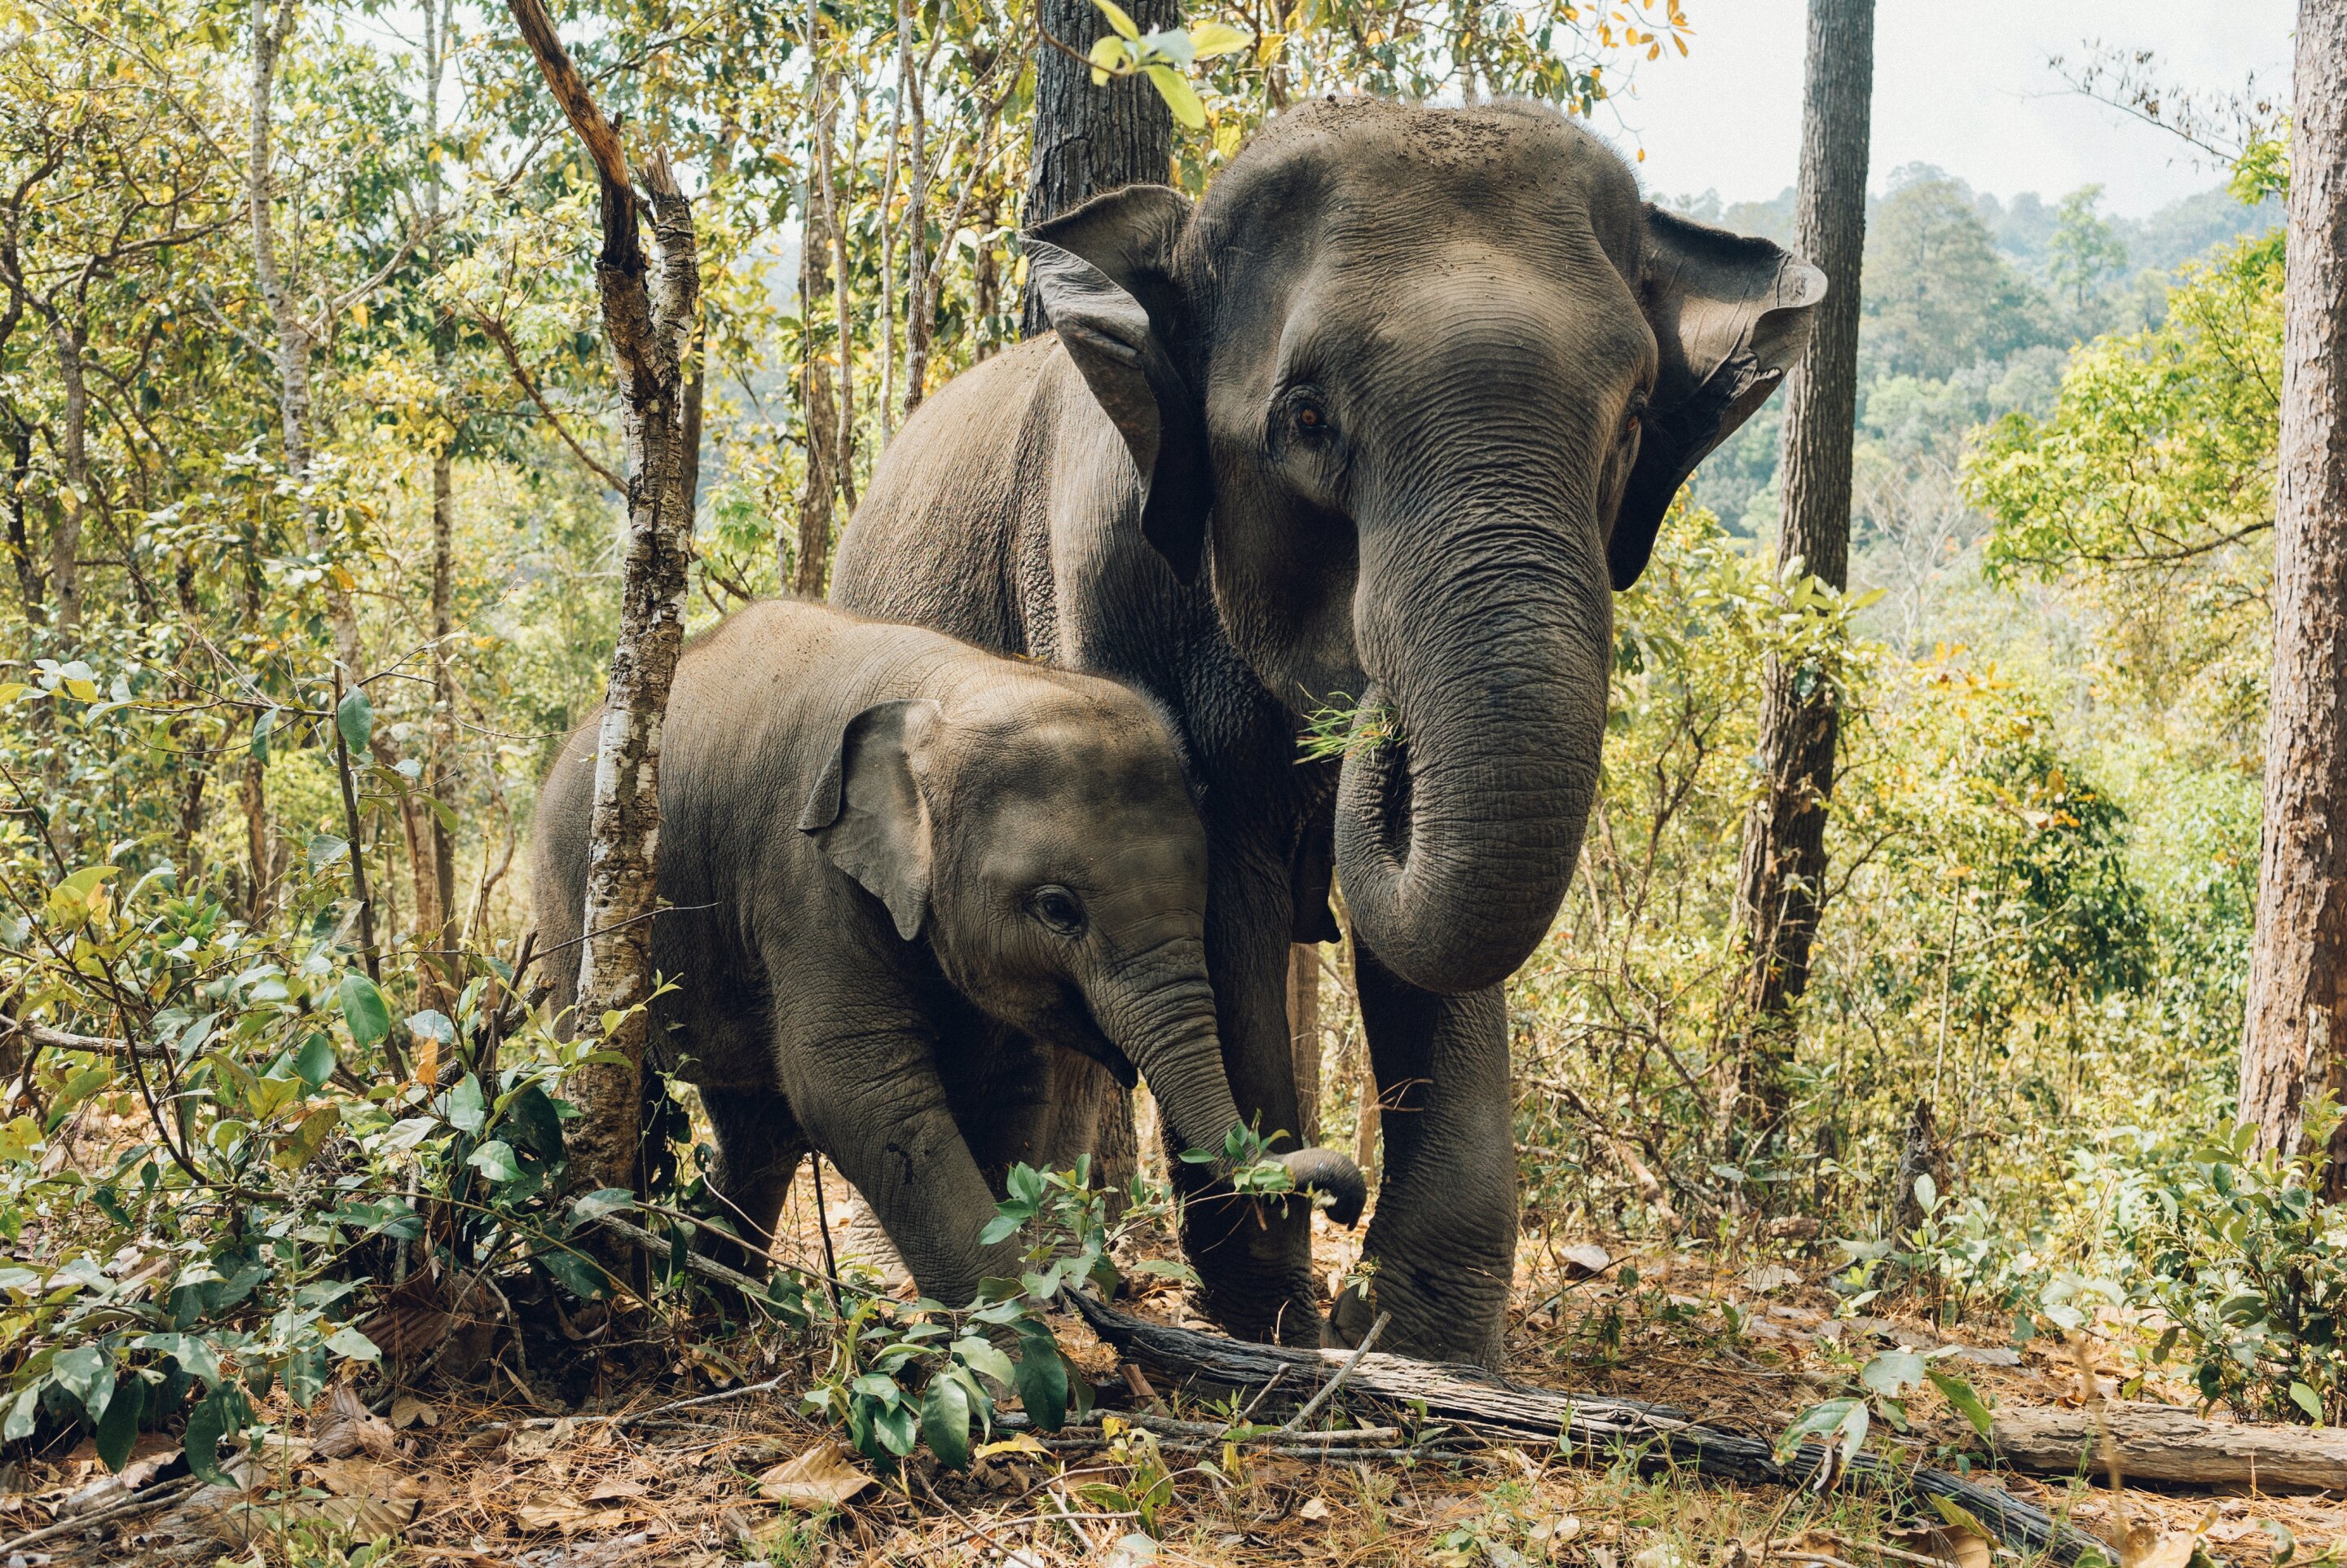 Asian elephants mourn, bury their dead calves: Study